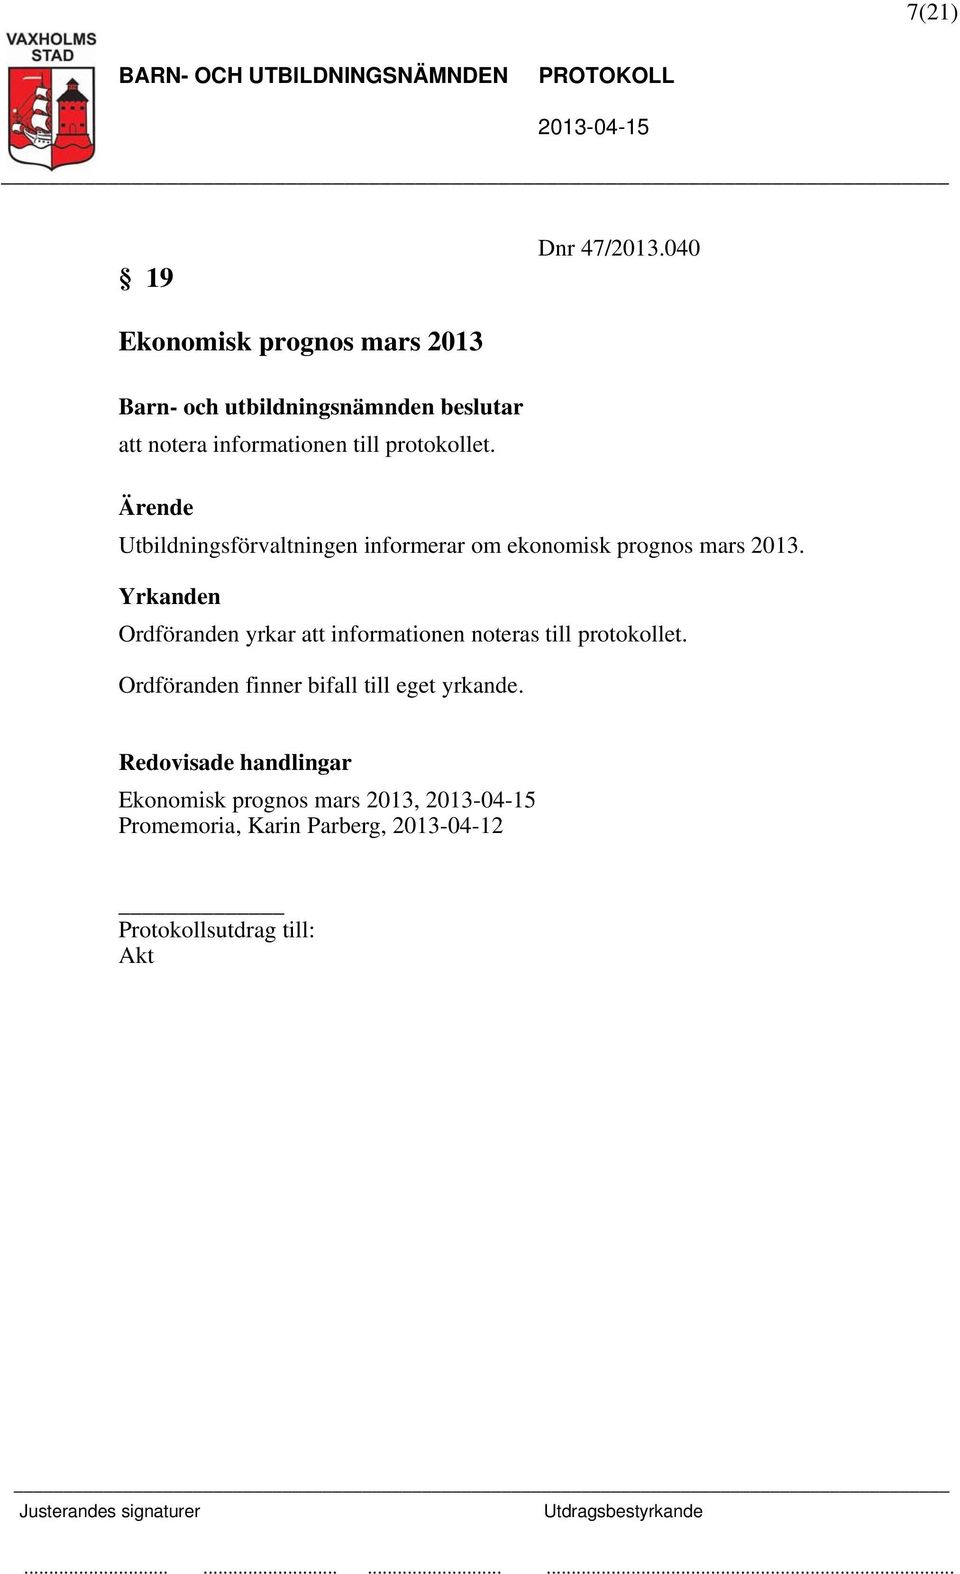 Utbildningsförvaltningen informerar om ekonomisk prognos mars 2013.